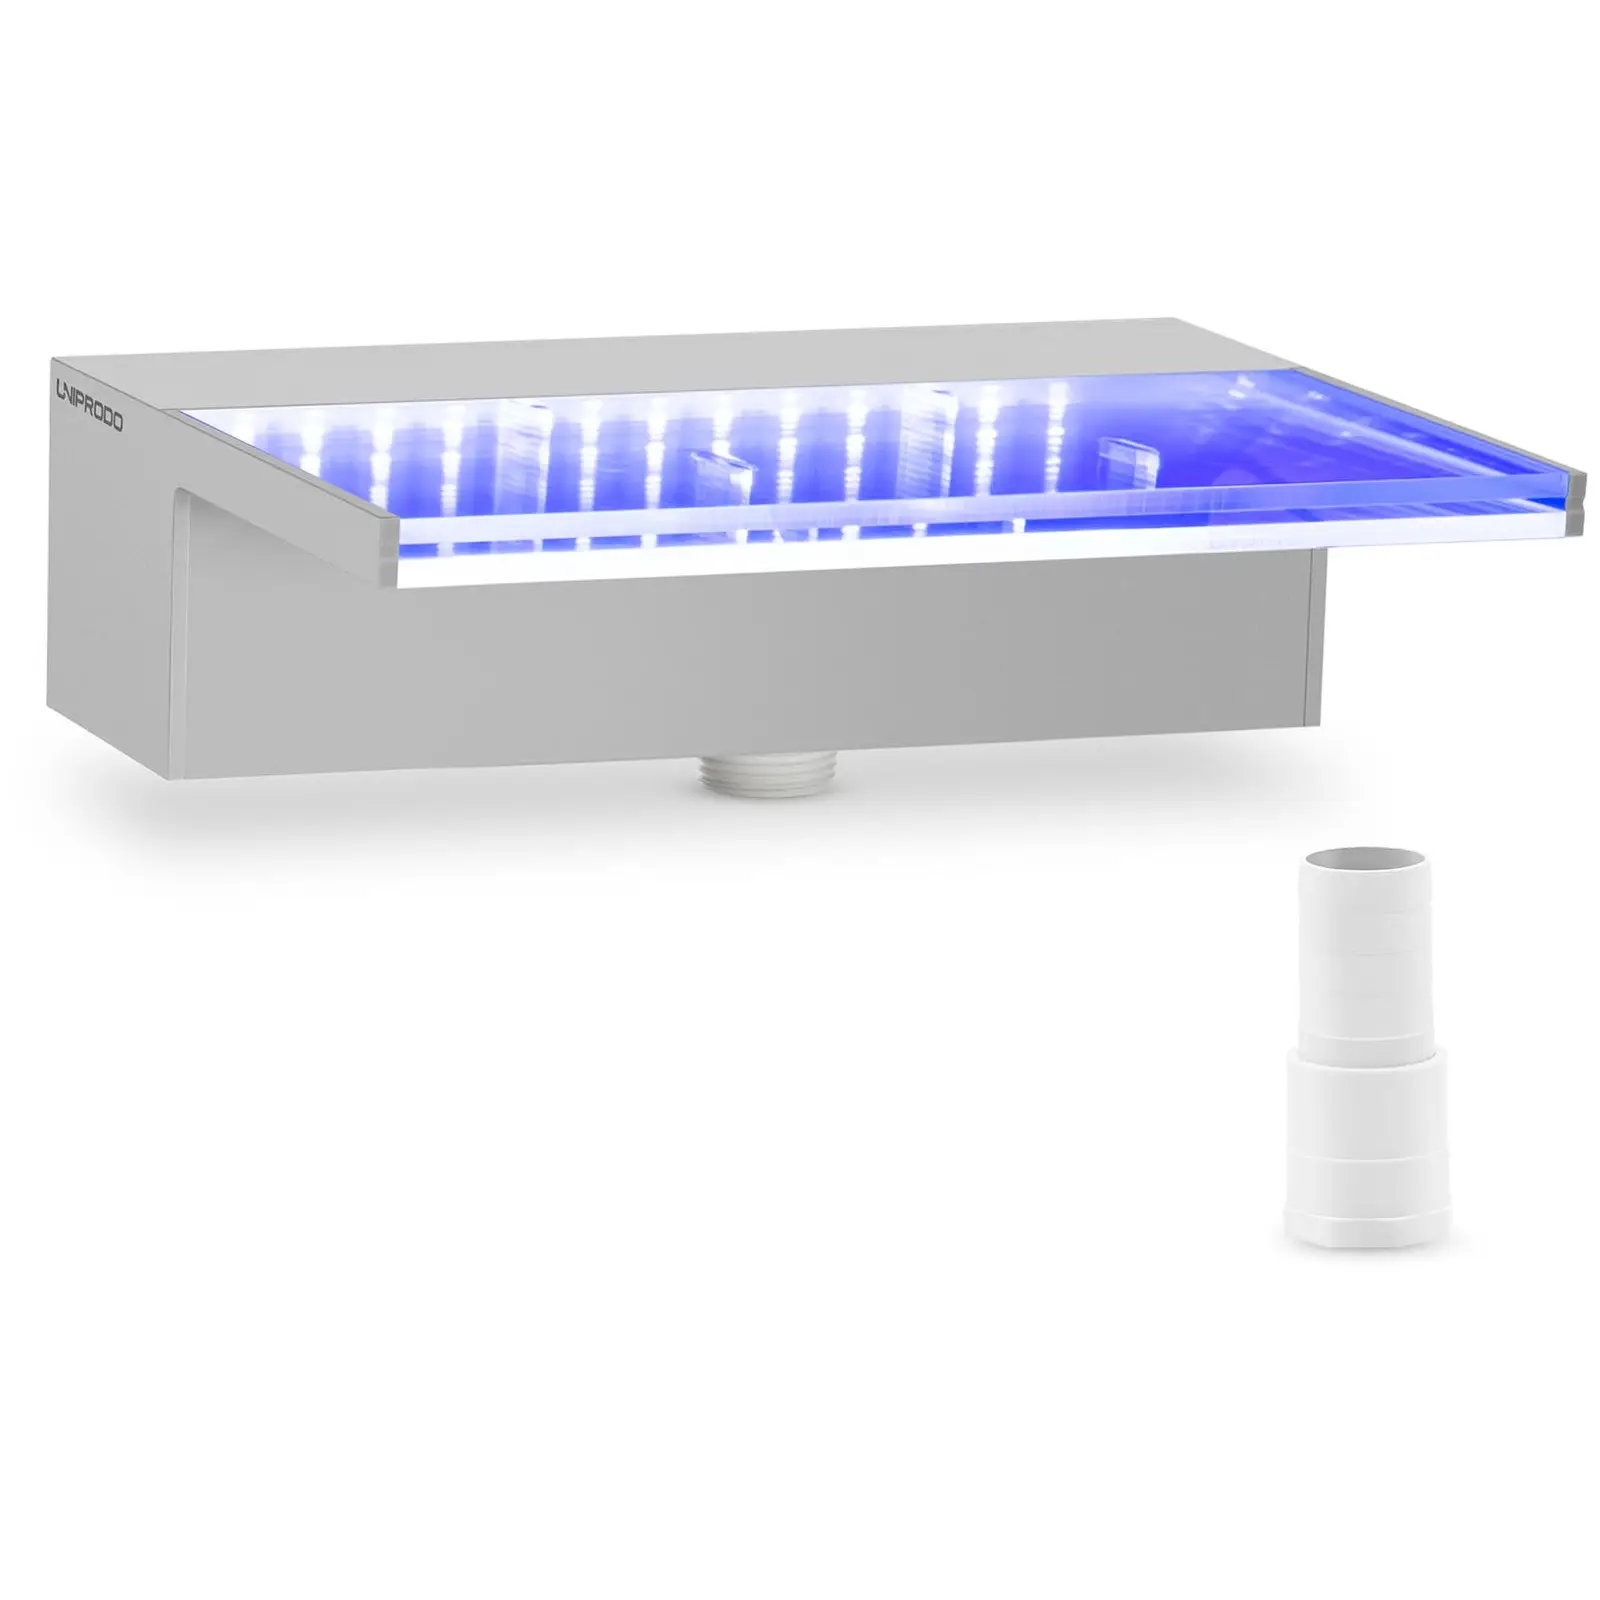 Cascada para piscina - 30 cm - Iluminación LED - azul/blanco - salida de agua: 135 mm